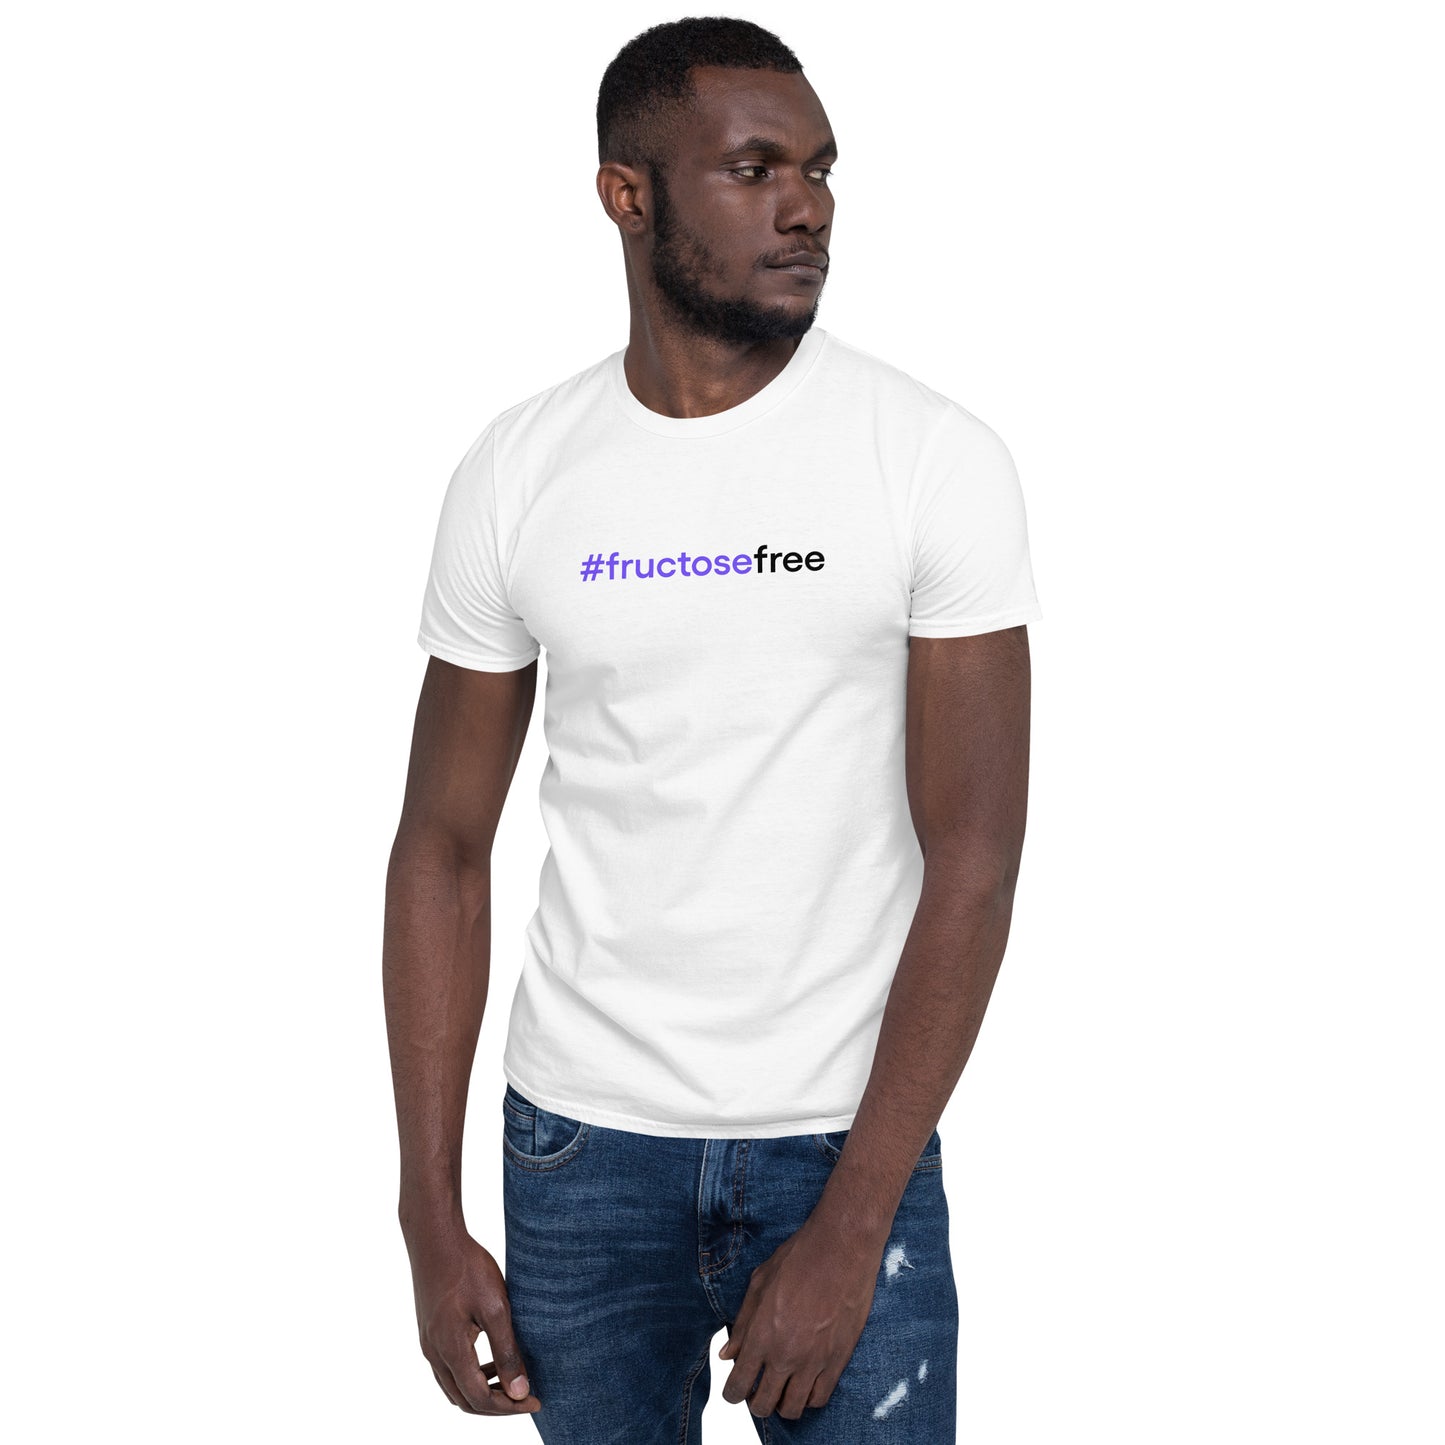 #fructosefree | Short-Sleeve Unisex T-Shirt